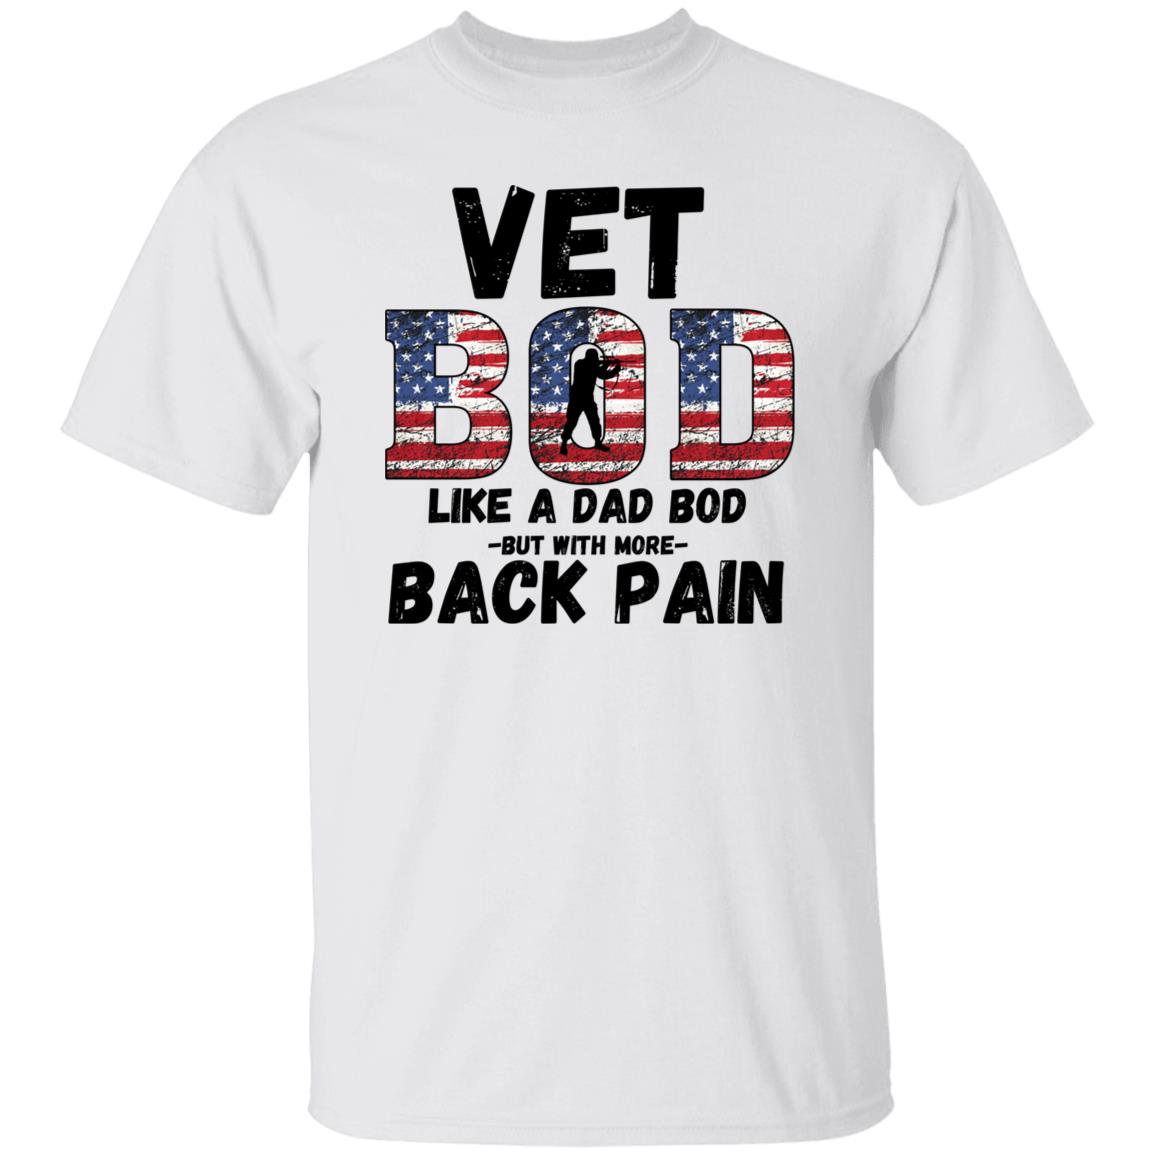 Vet BOD / Back Pain (Veterans) T-Shirt – Sweet Ginger Gifts